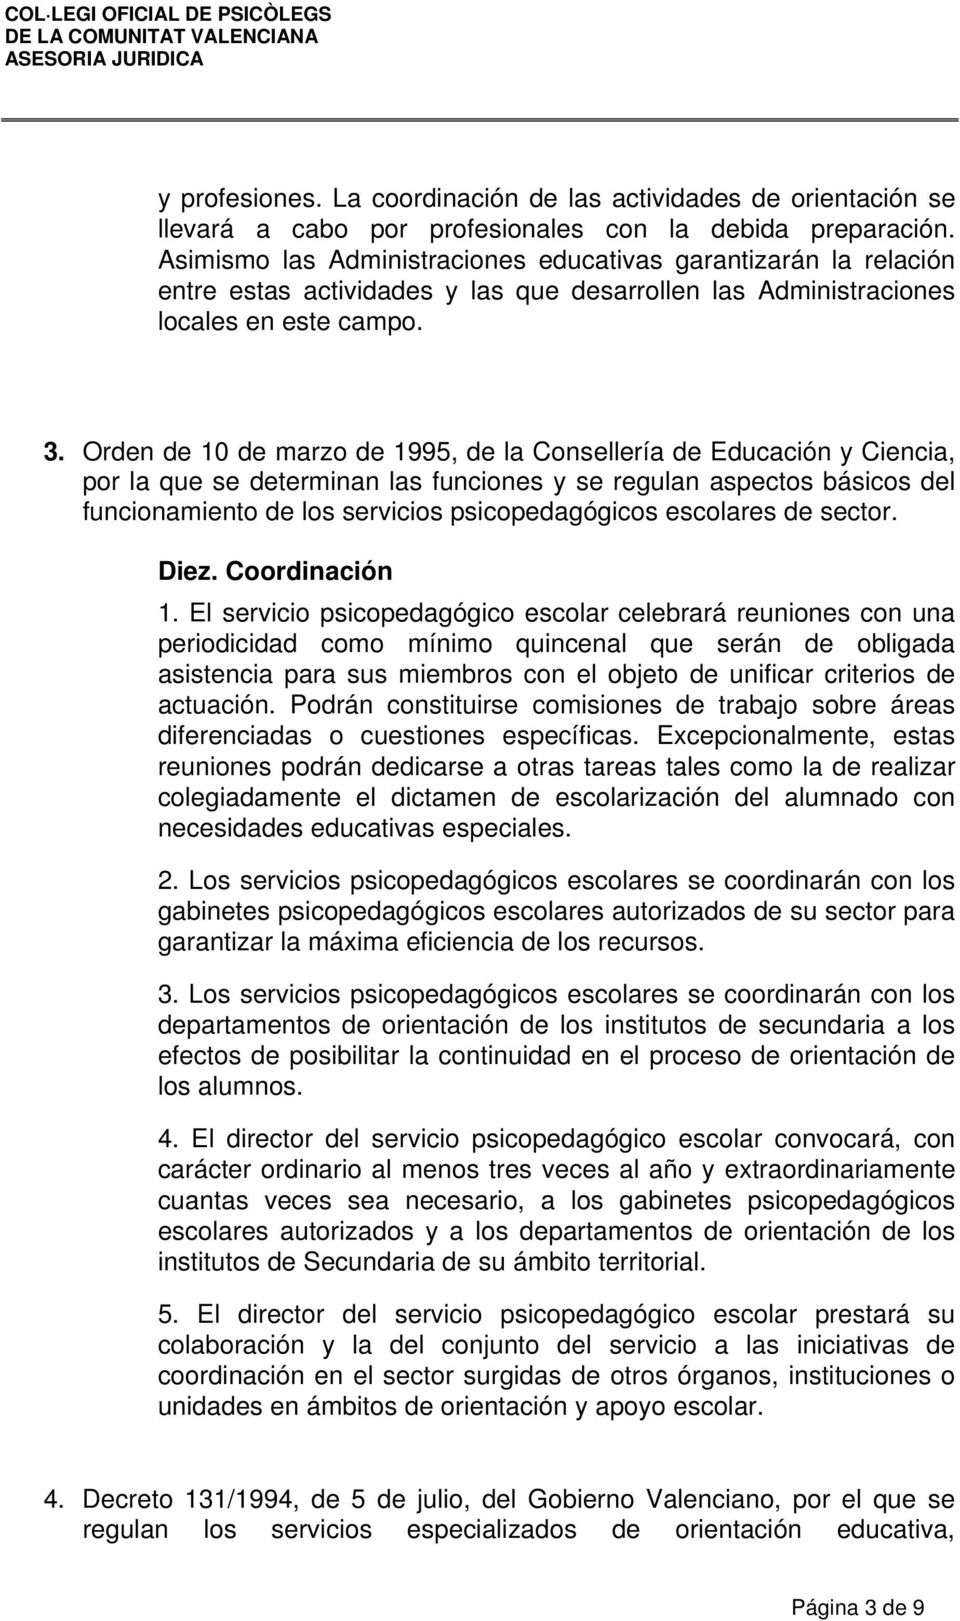 Orden de 10 de marzo de 1995, de la Consellería de Educación y Ciencia, por la que se determinan las funciones y se regulan aspectos básicos del funcionamiento de los servicios psicopedagógicos